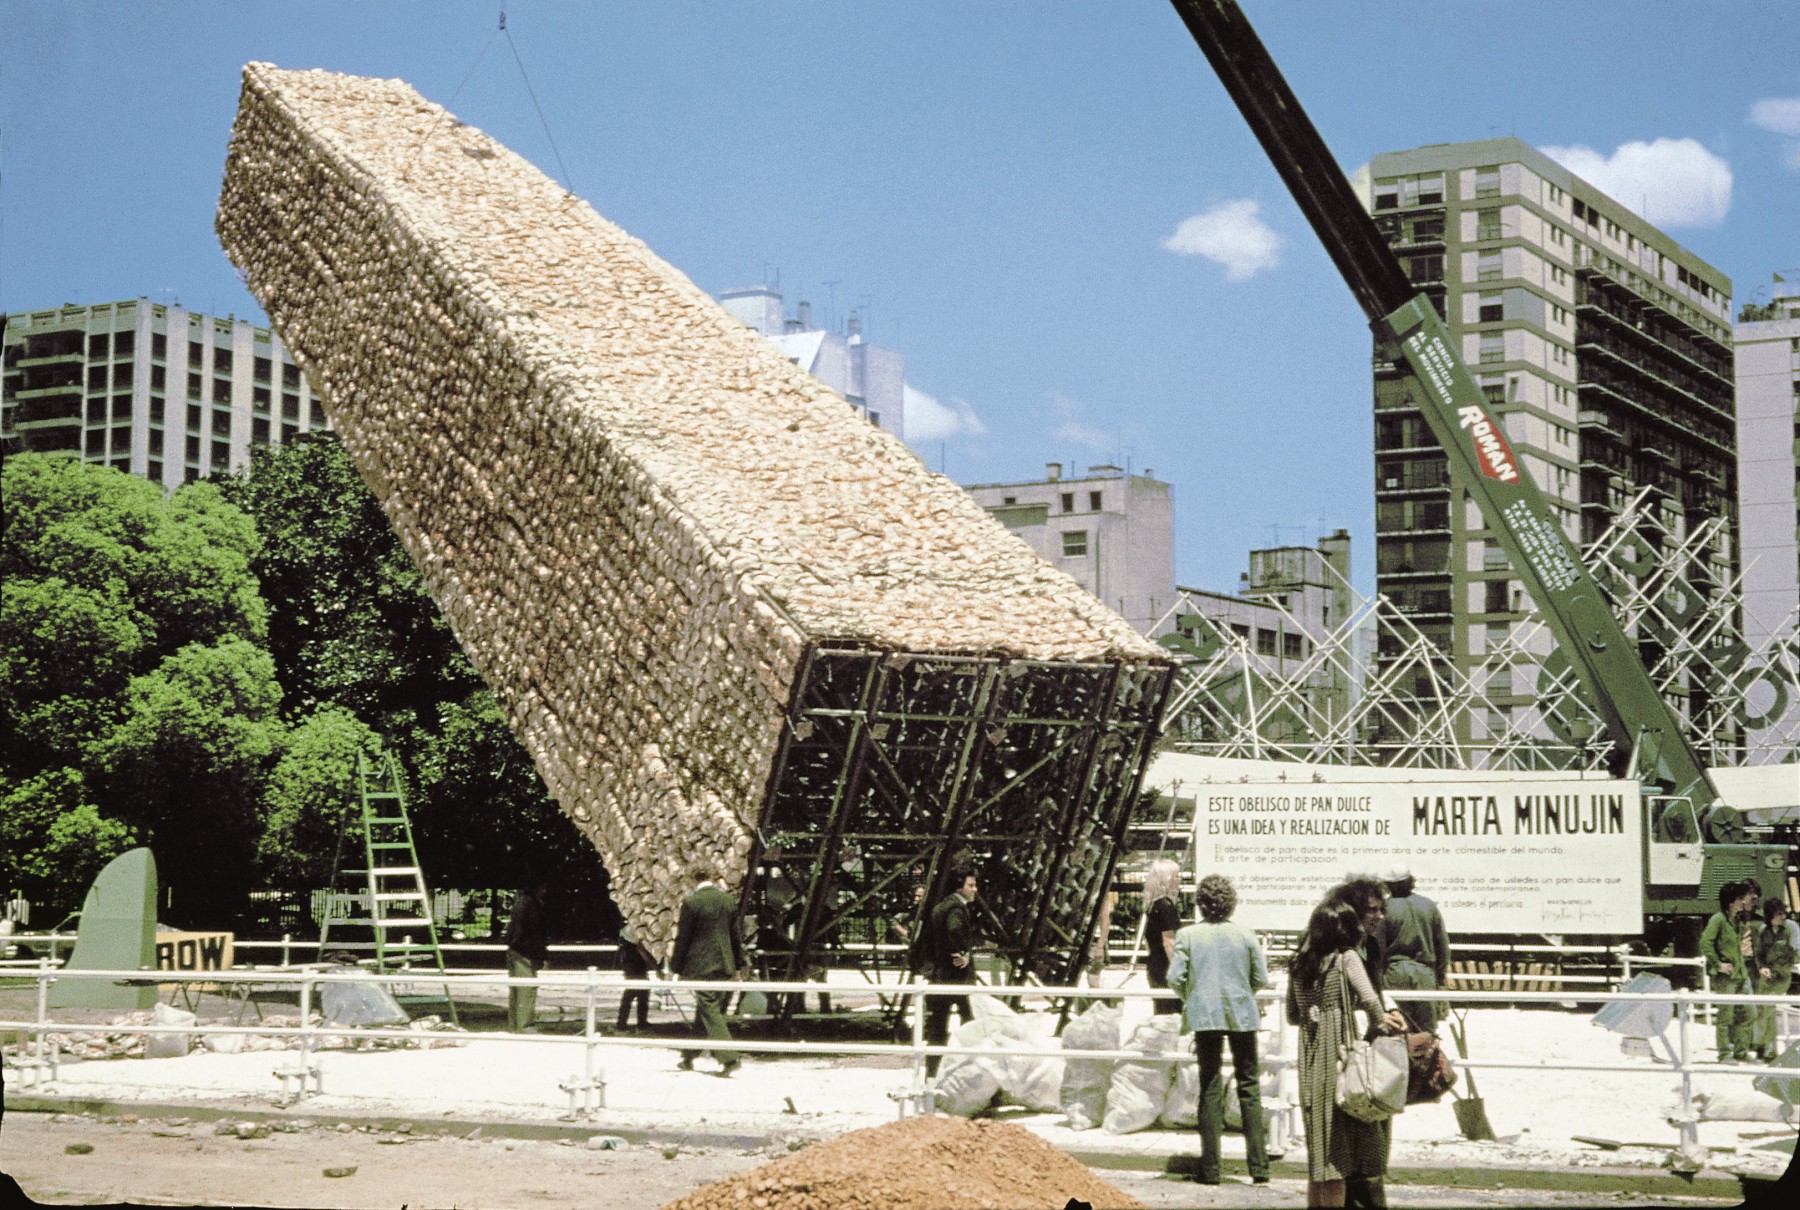 Documentaci&amp;oacute;n de El obelisco de pan dulce, Feria de Las Naciones, Buenos Aires, noviembre 8&amp;ndash;18, 1979